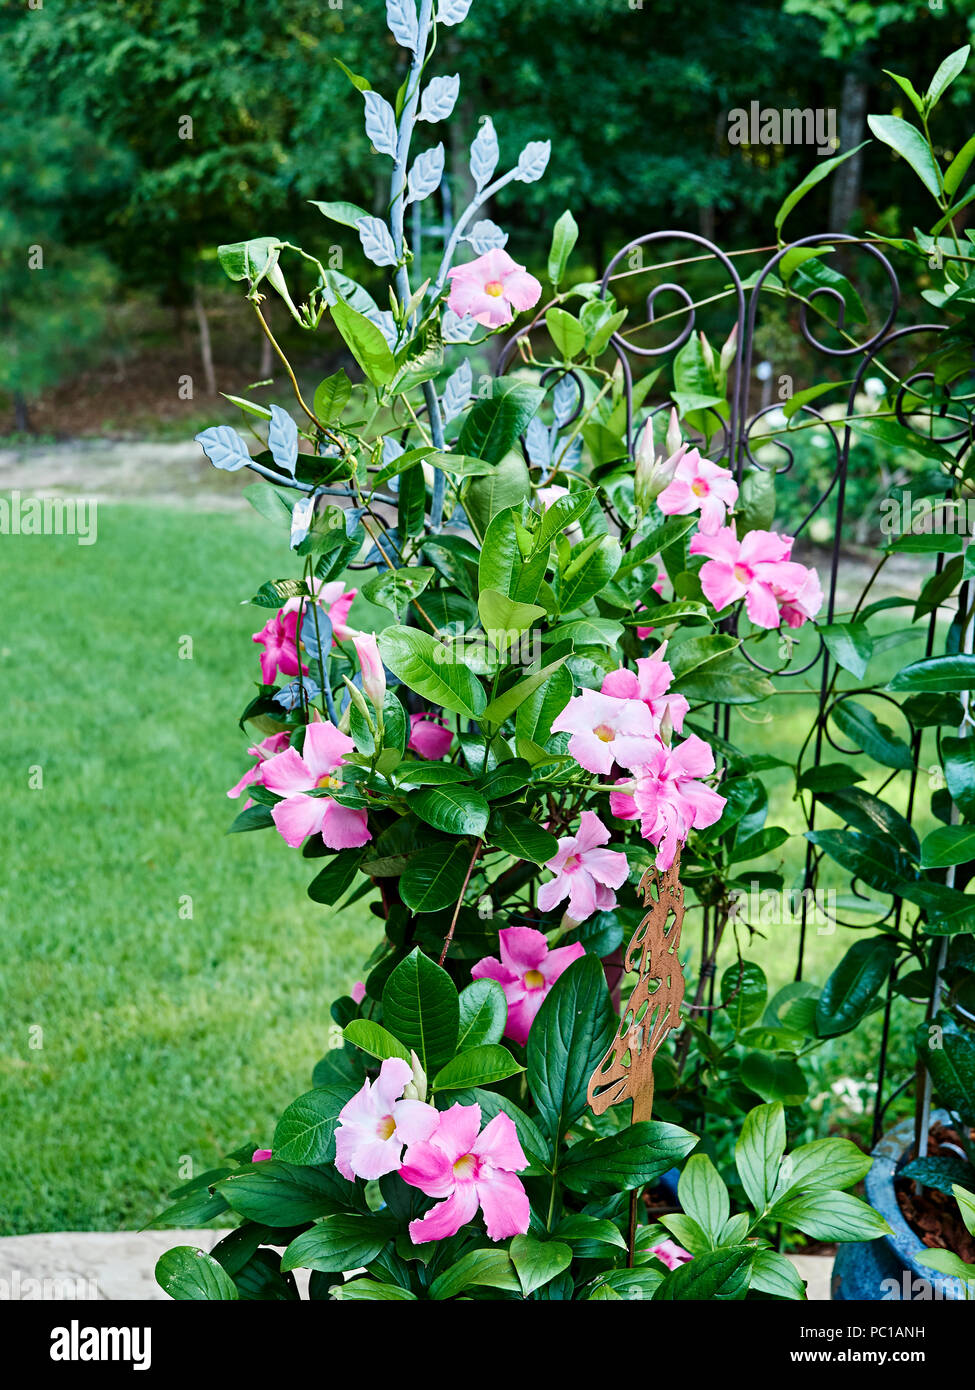 Rosa Mandevilla Blüte gehört zu den dogbane Family, Apocynaceae, mit einem gemeinsamen Namen des rock Posaune in einer Terrasse Garten wachsen. Stockfoto